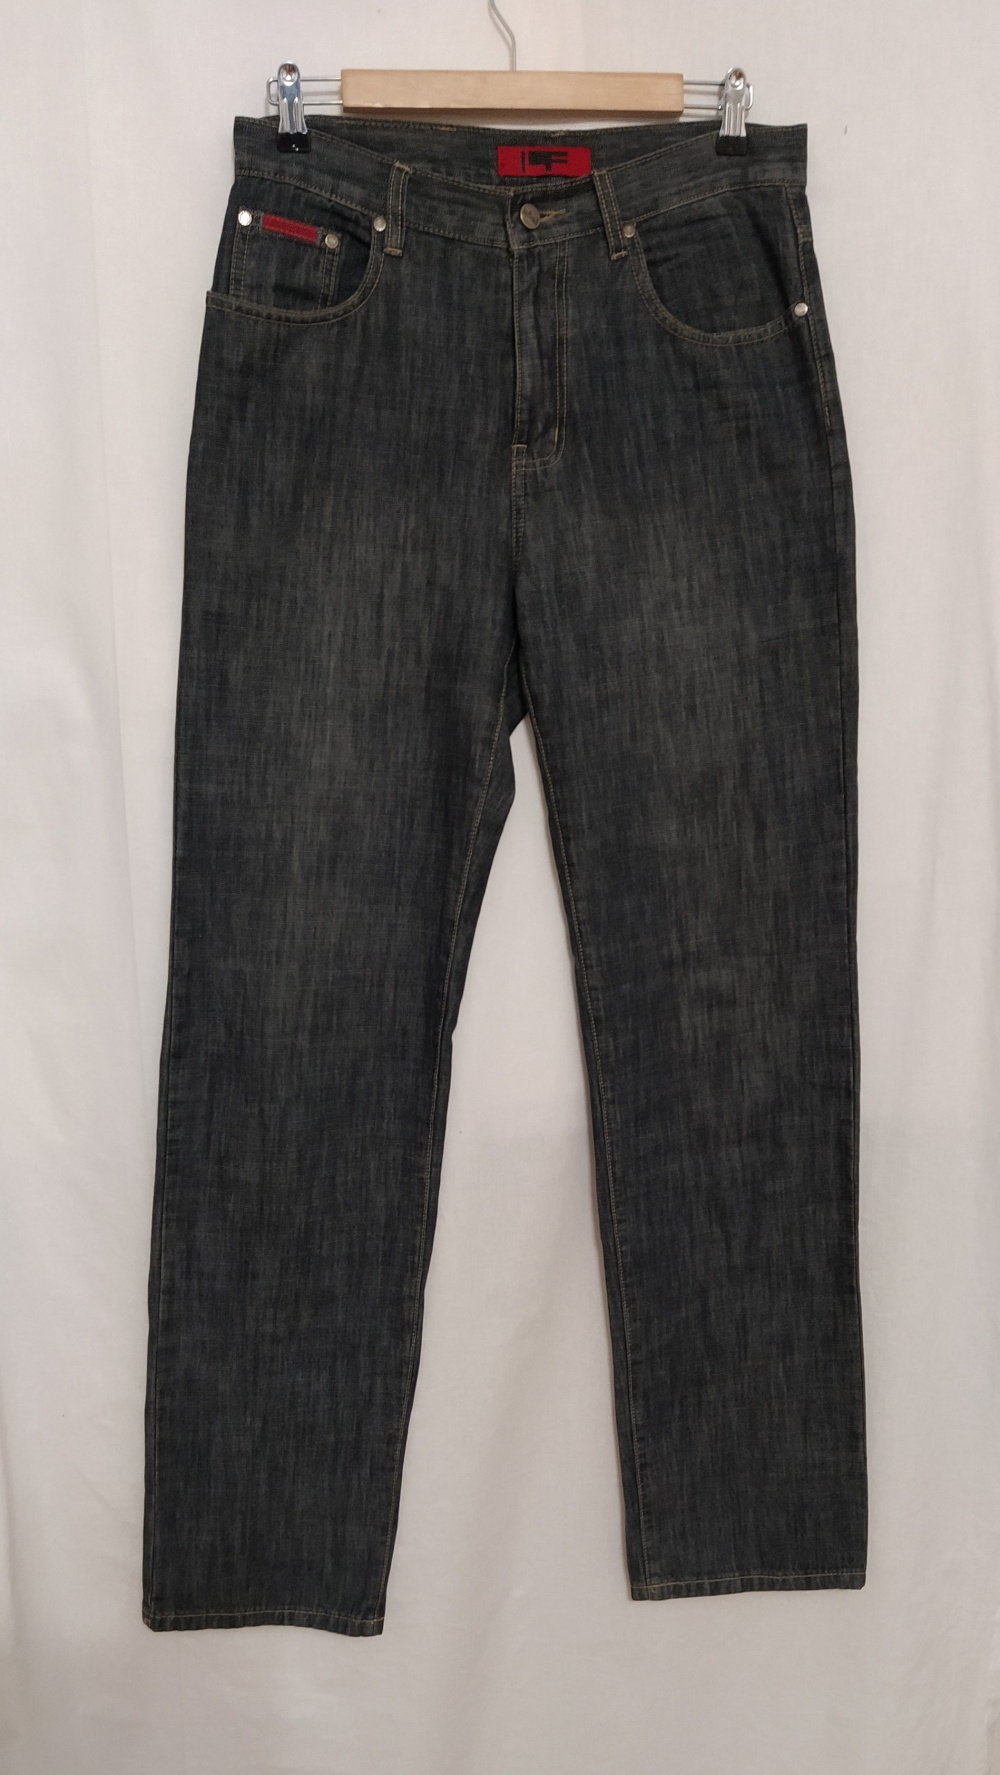 Джинсы Leonardo Falconi, 32 джинсовый размер на 46